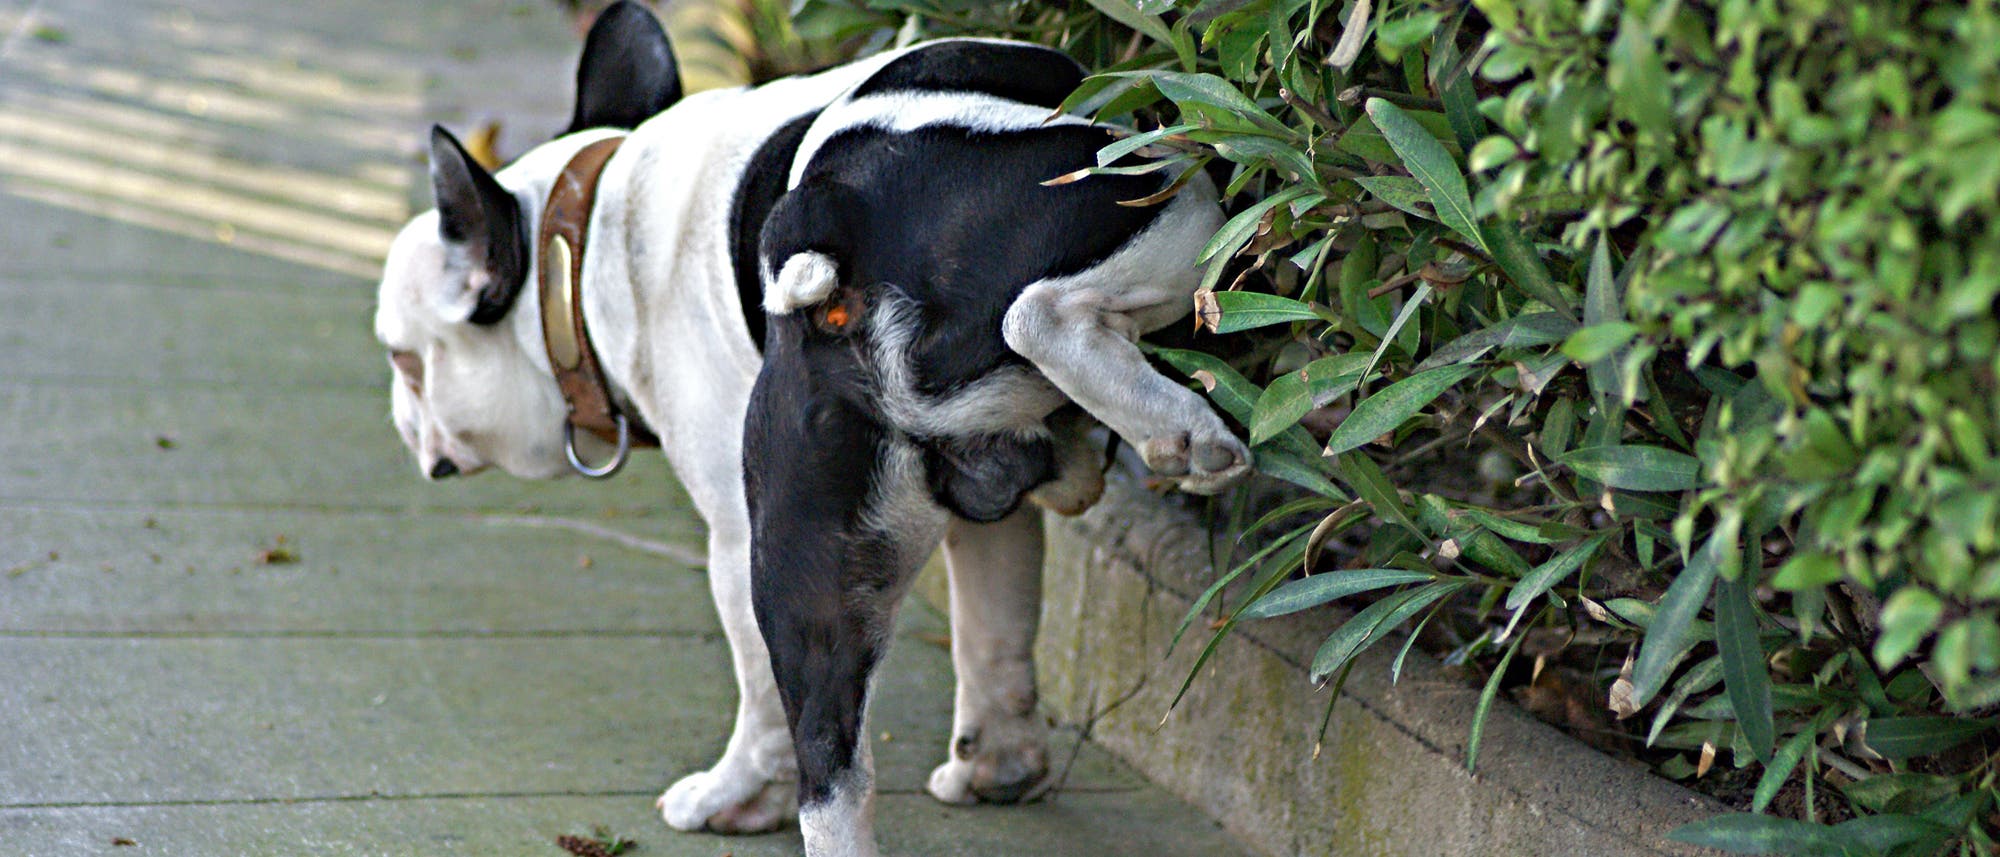 Ein schwarz-weißer Hund hebt sein Bein an einer Hecke.